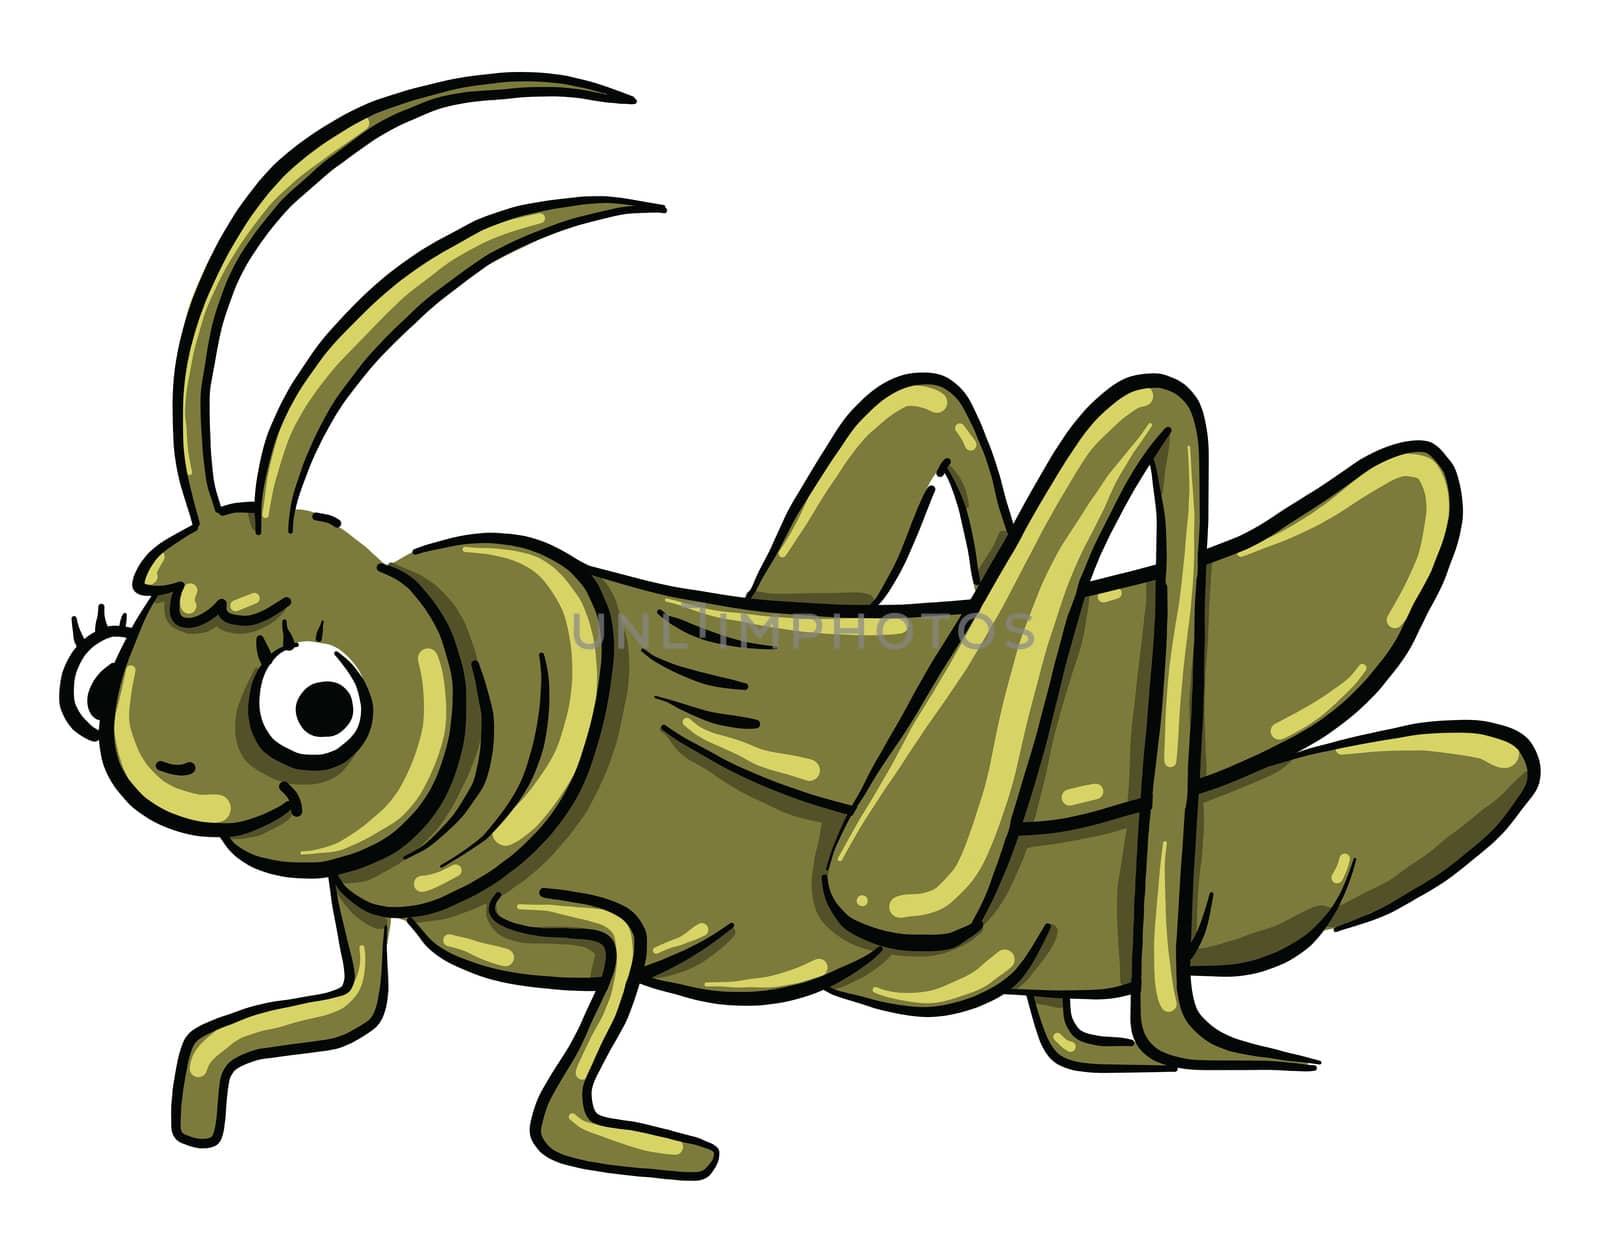 Green grasshopper , illustration, vector on white background by Morphart